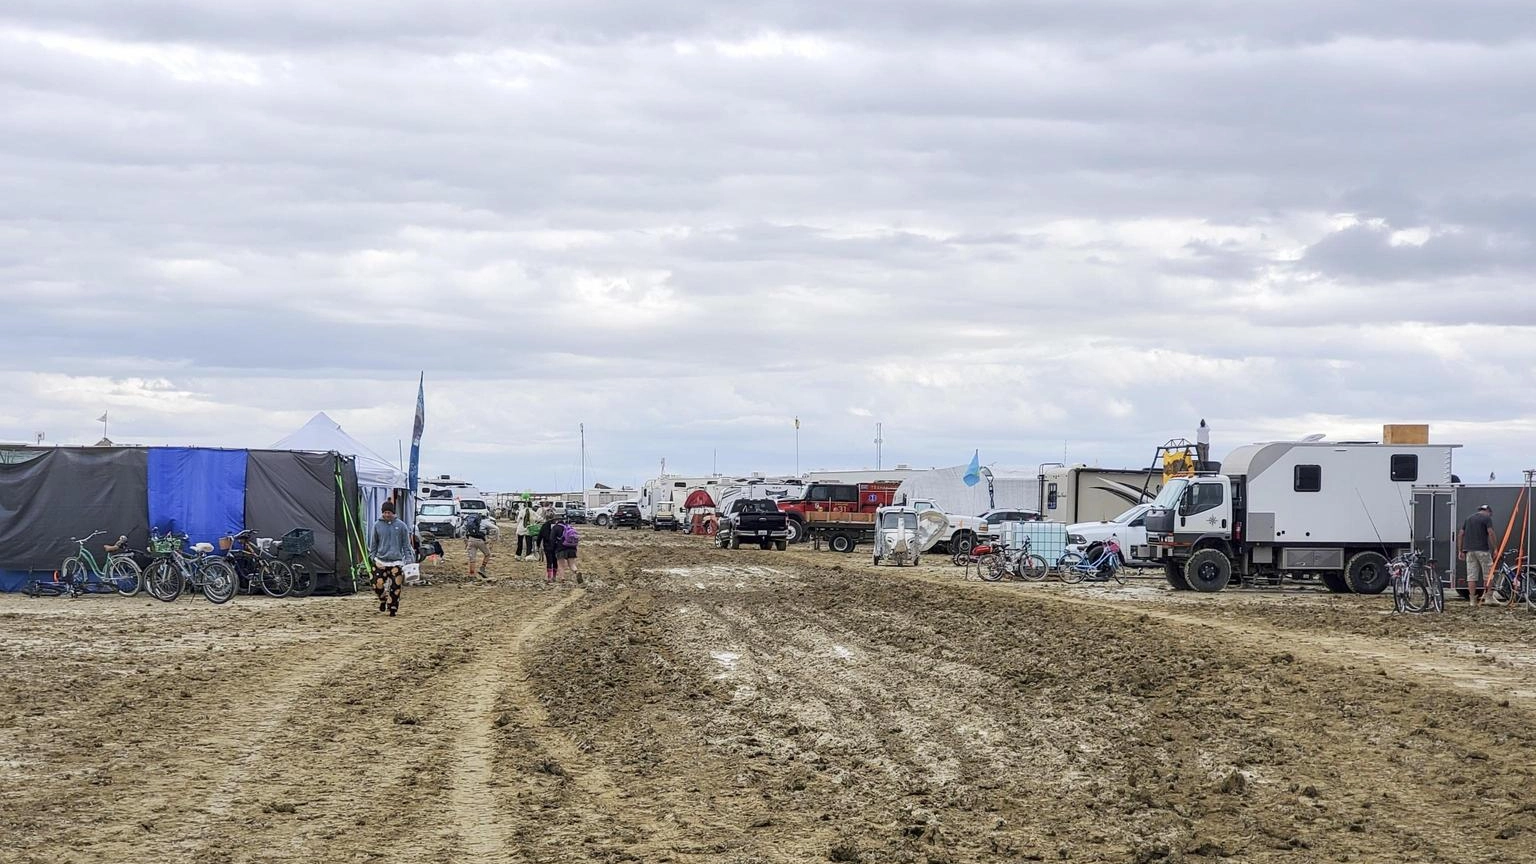 Al via evacuazione delle persone intrappolate al festival Nevada